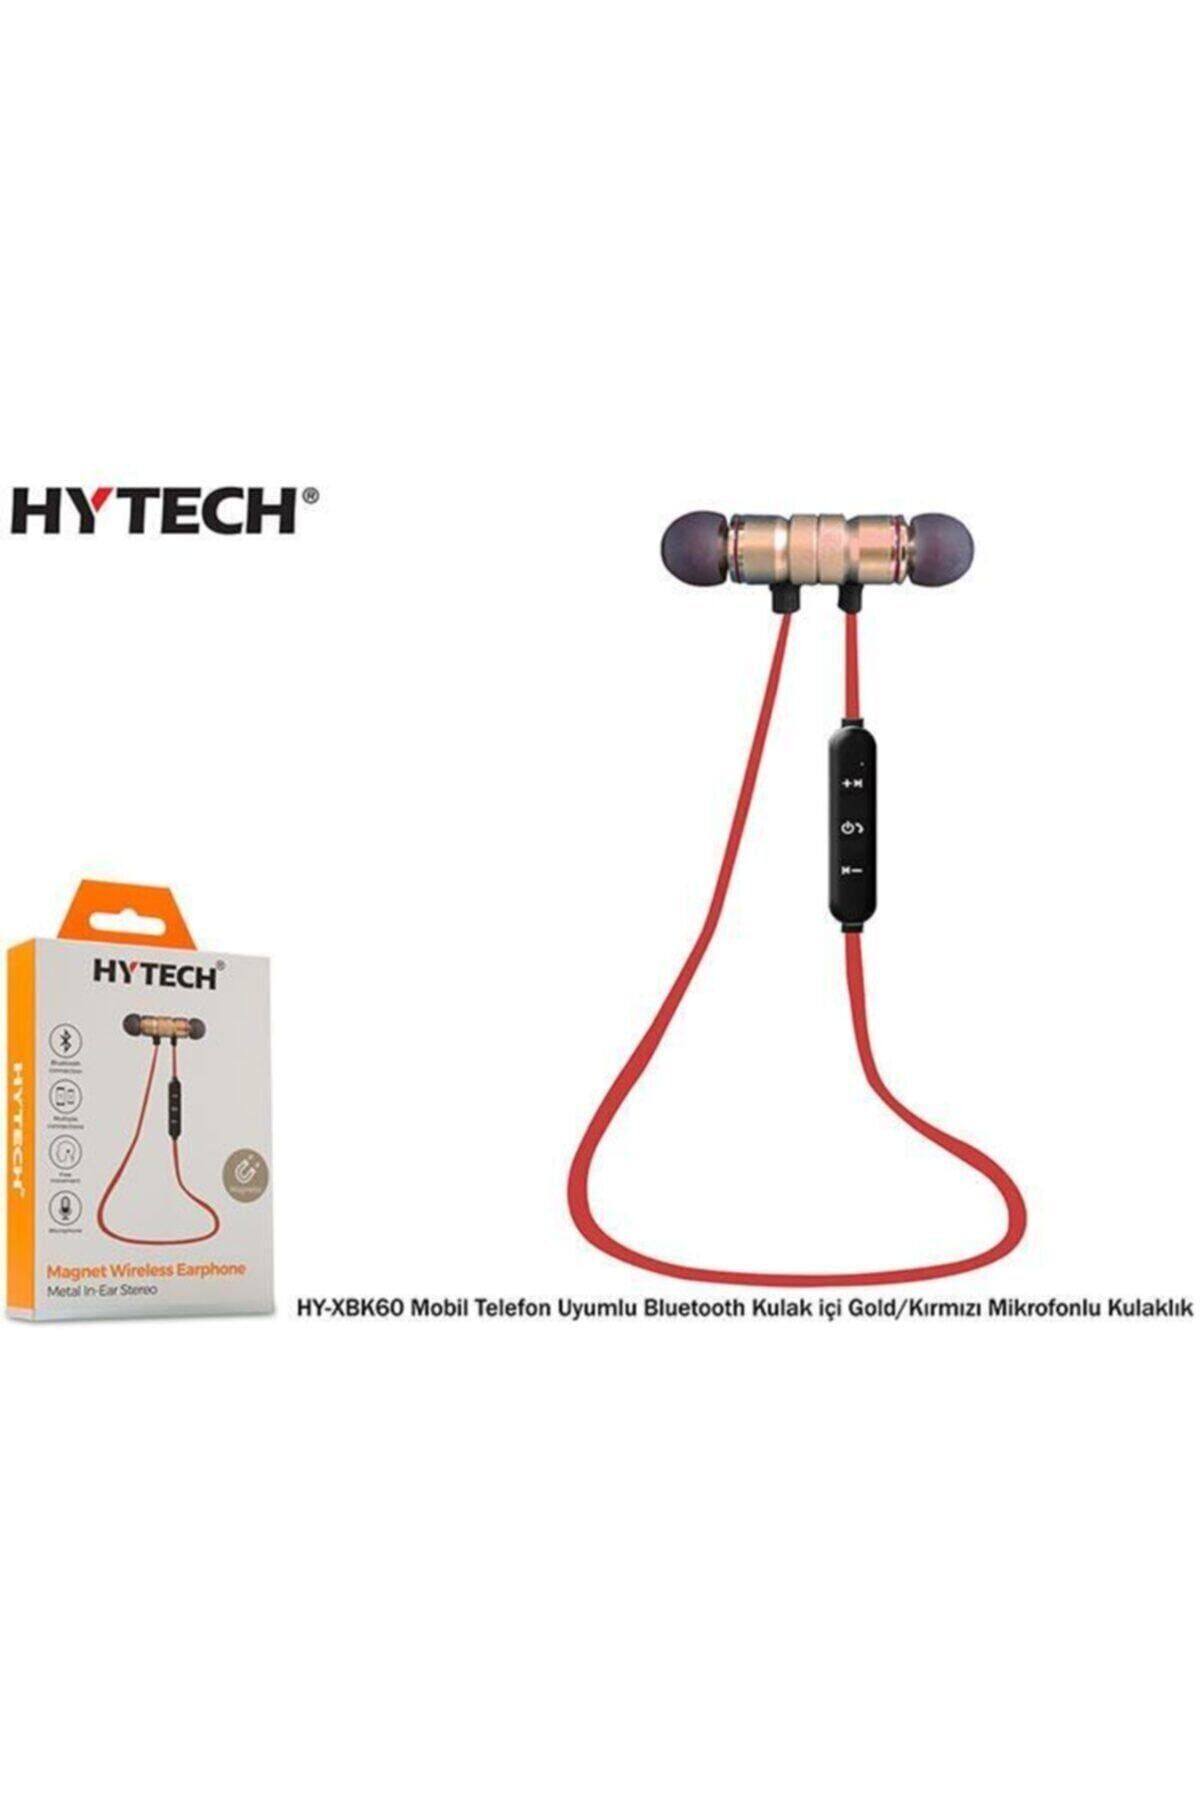 Hytech Hy-xbk60 Mobil Telefon Uyumlu Bluetooth Kulakiçi